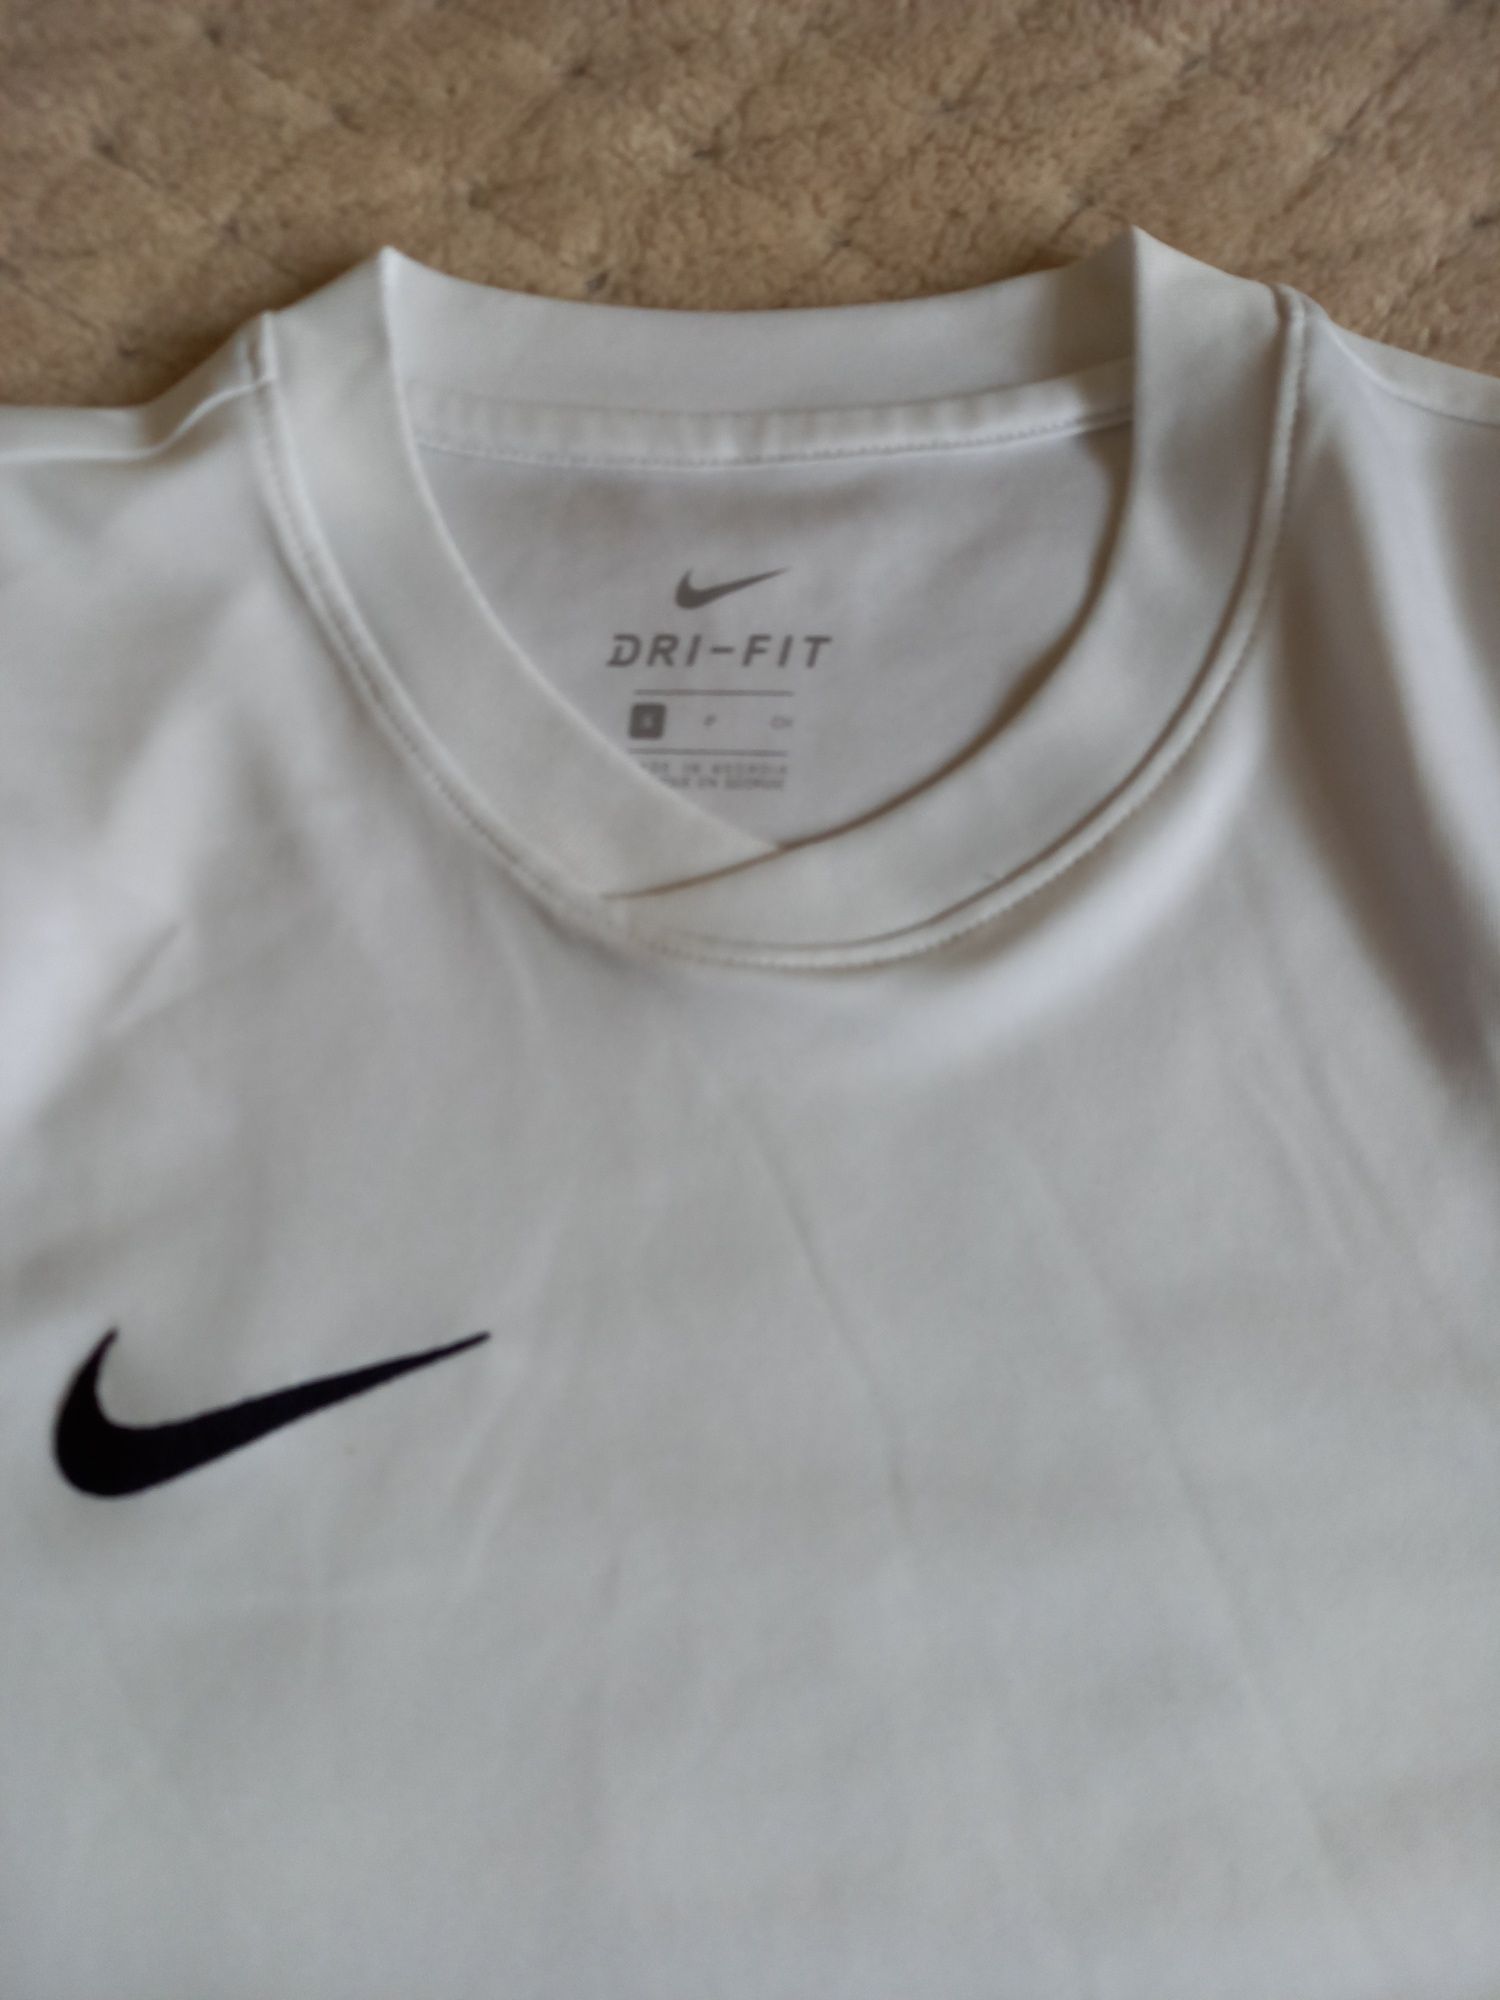 Koszulka chłopięca treningowa, sportowa, piłkarska Nike